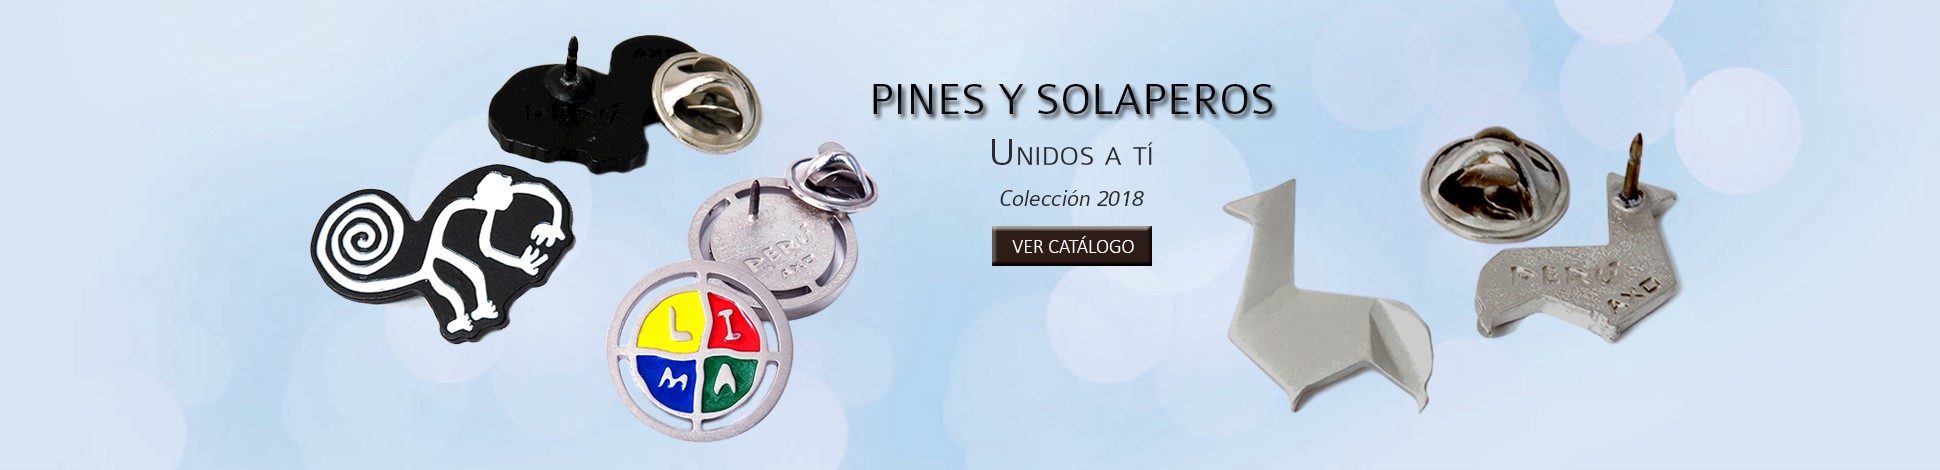 Slide-Pines-solaperos_01.jpg